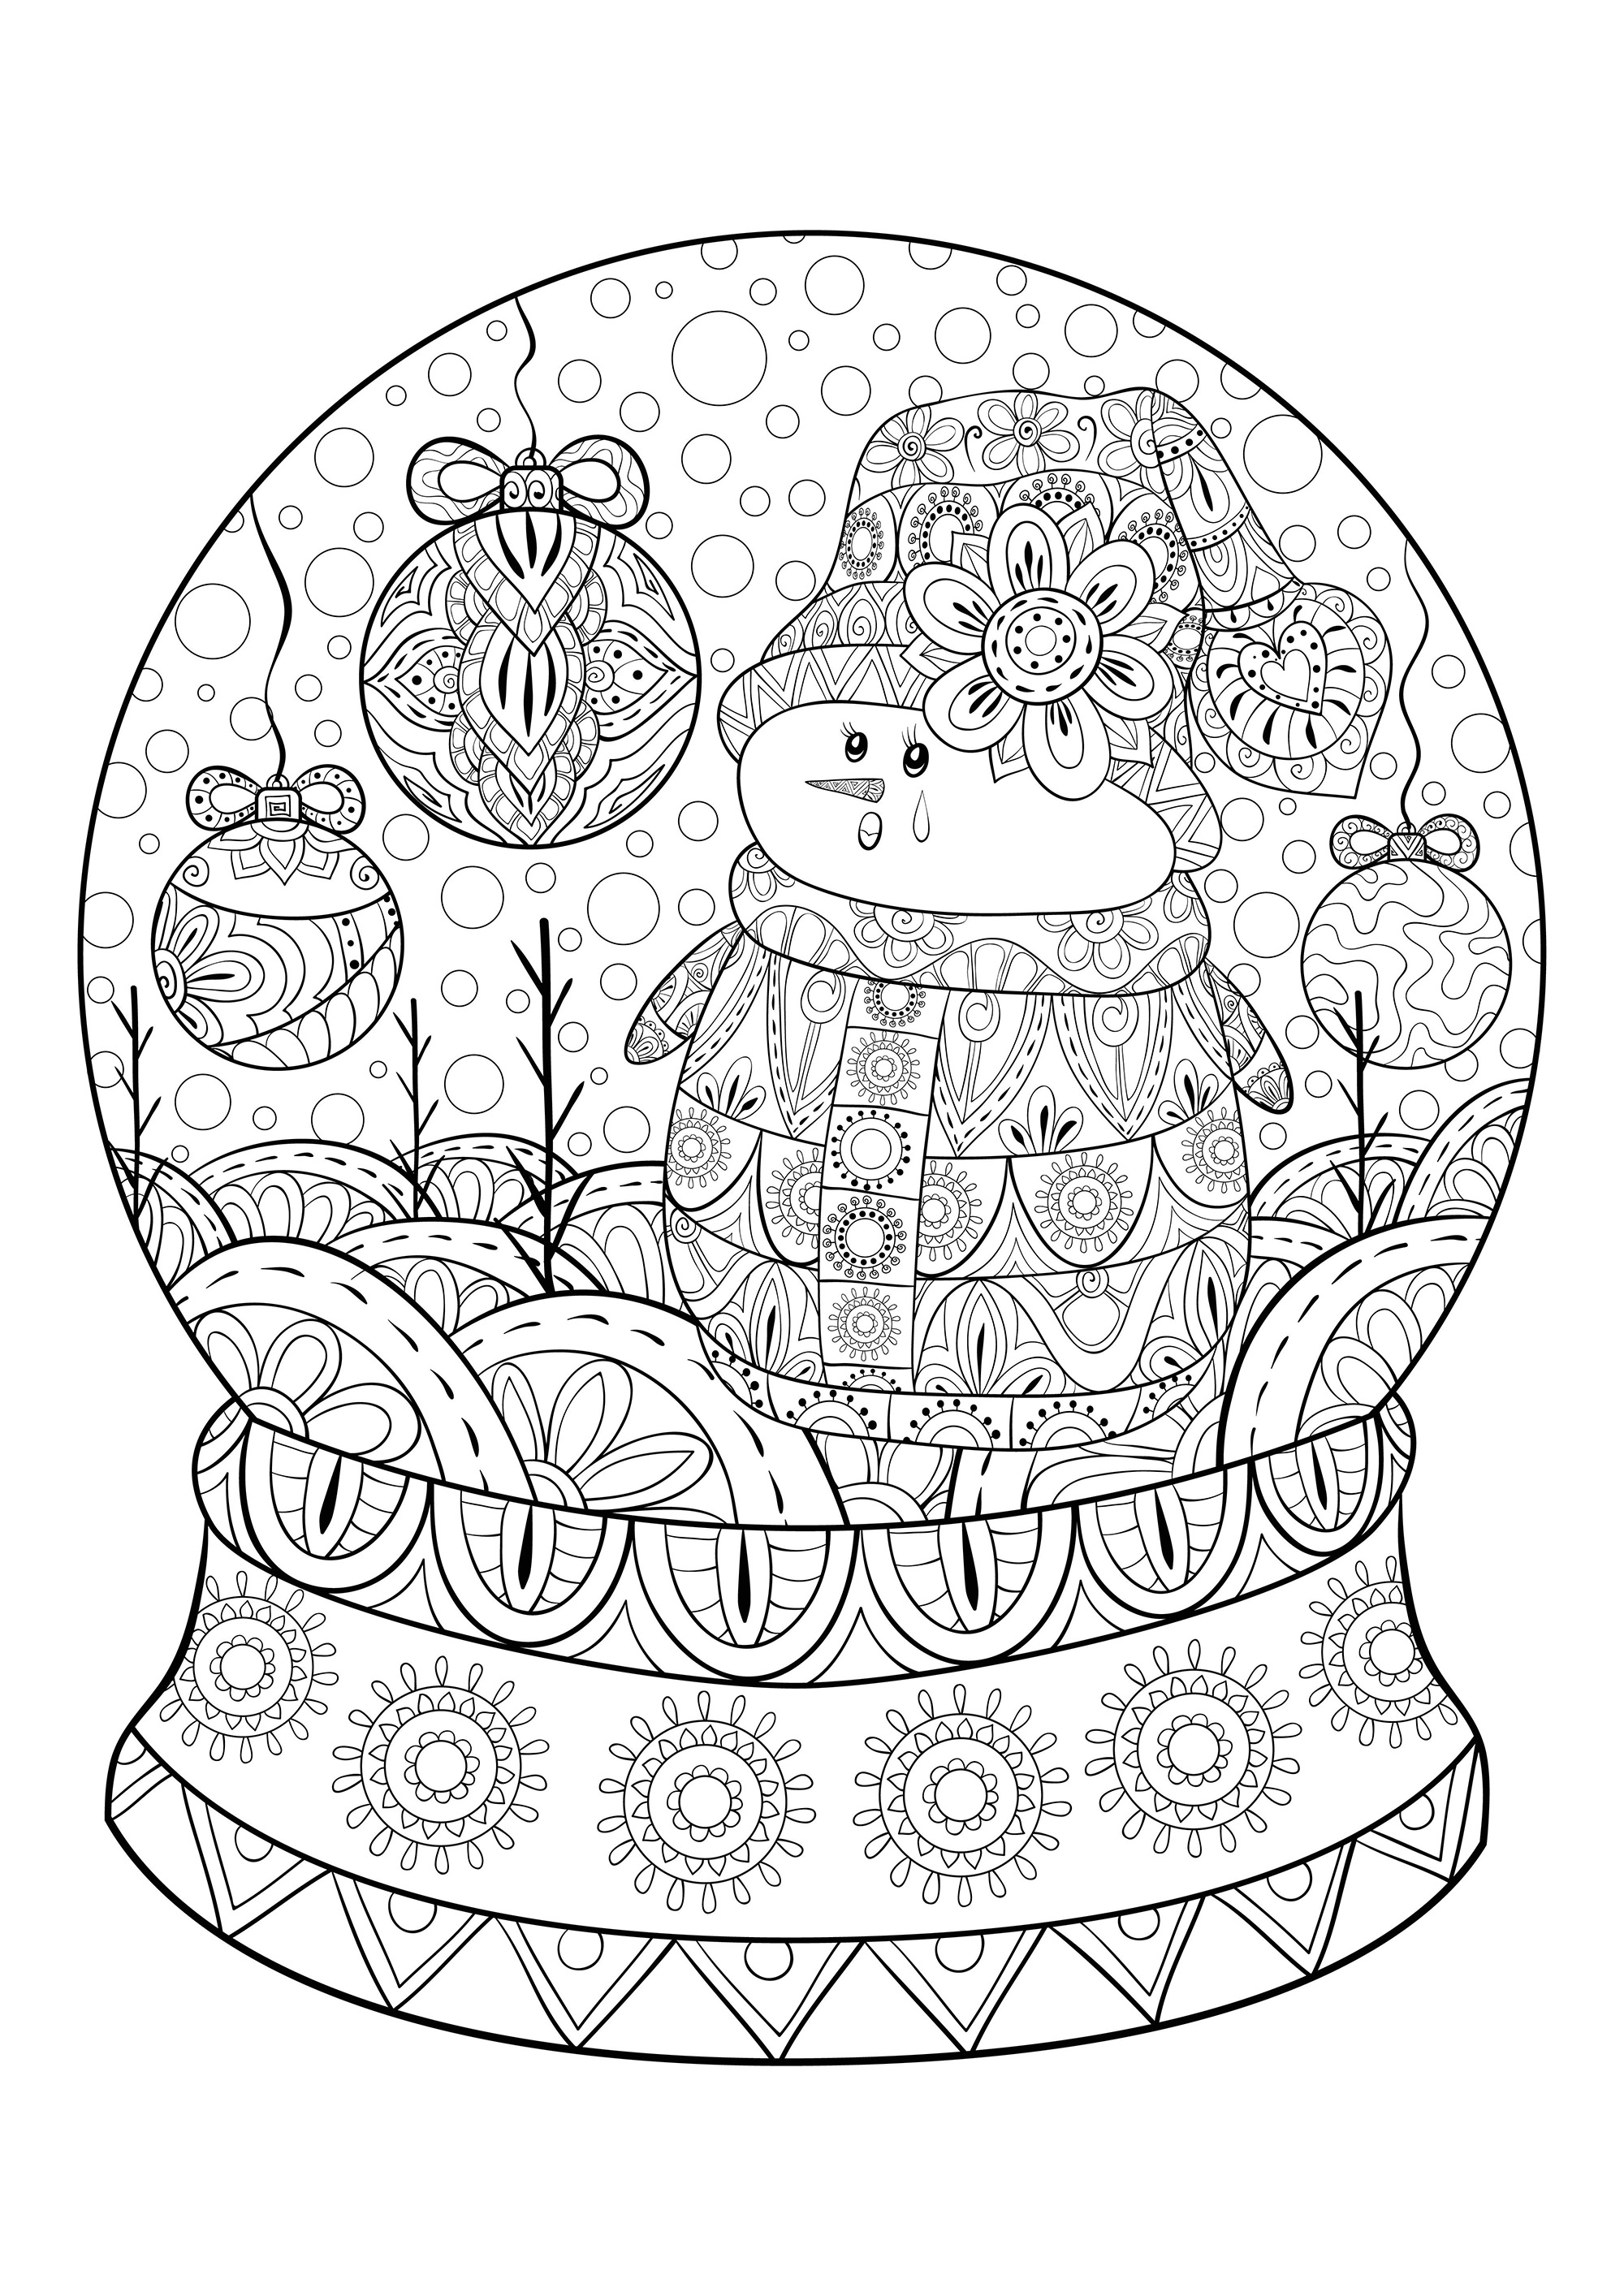 Une boule de neige de Noël comportant un bonhomme de neige et des boules de décoration de Noël, Source : 123rf   Artiste : Nonuzza